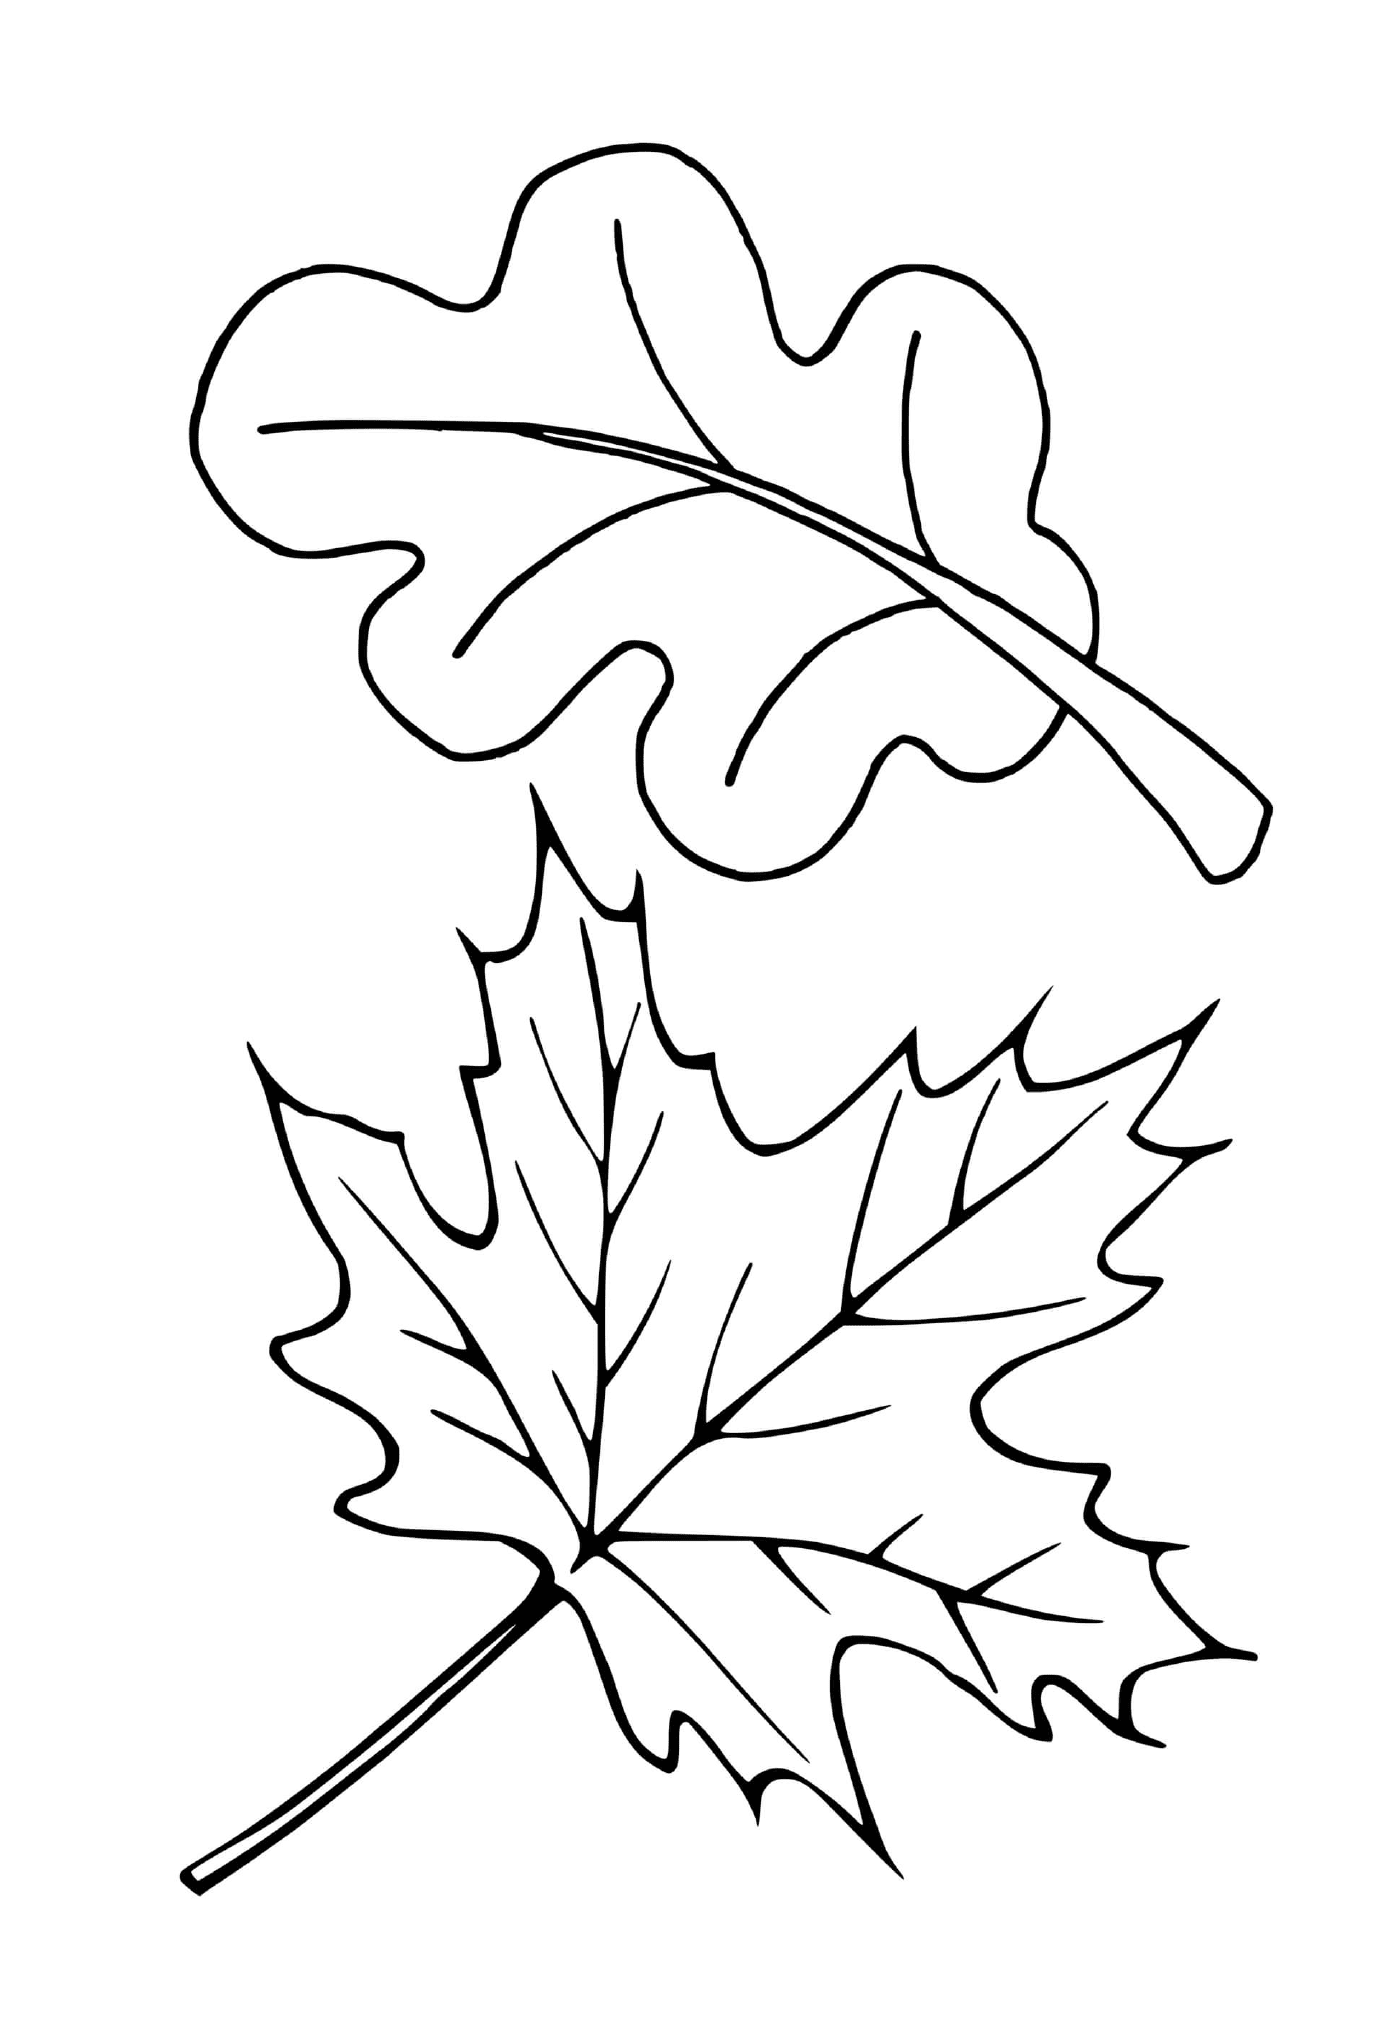   Deux feuilles différentes d'arbres (érable, chêne) 